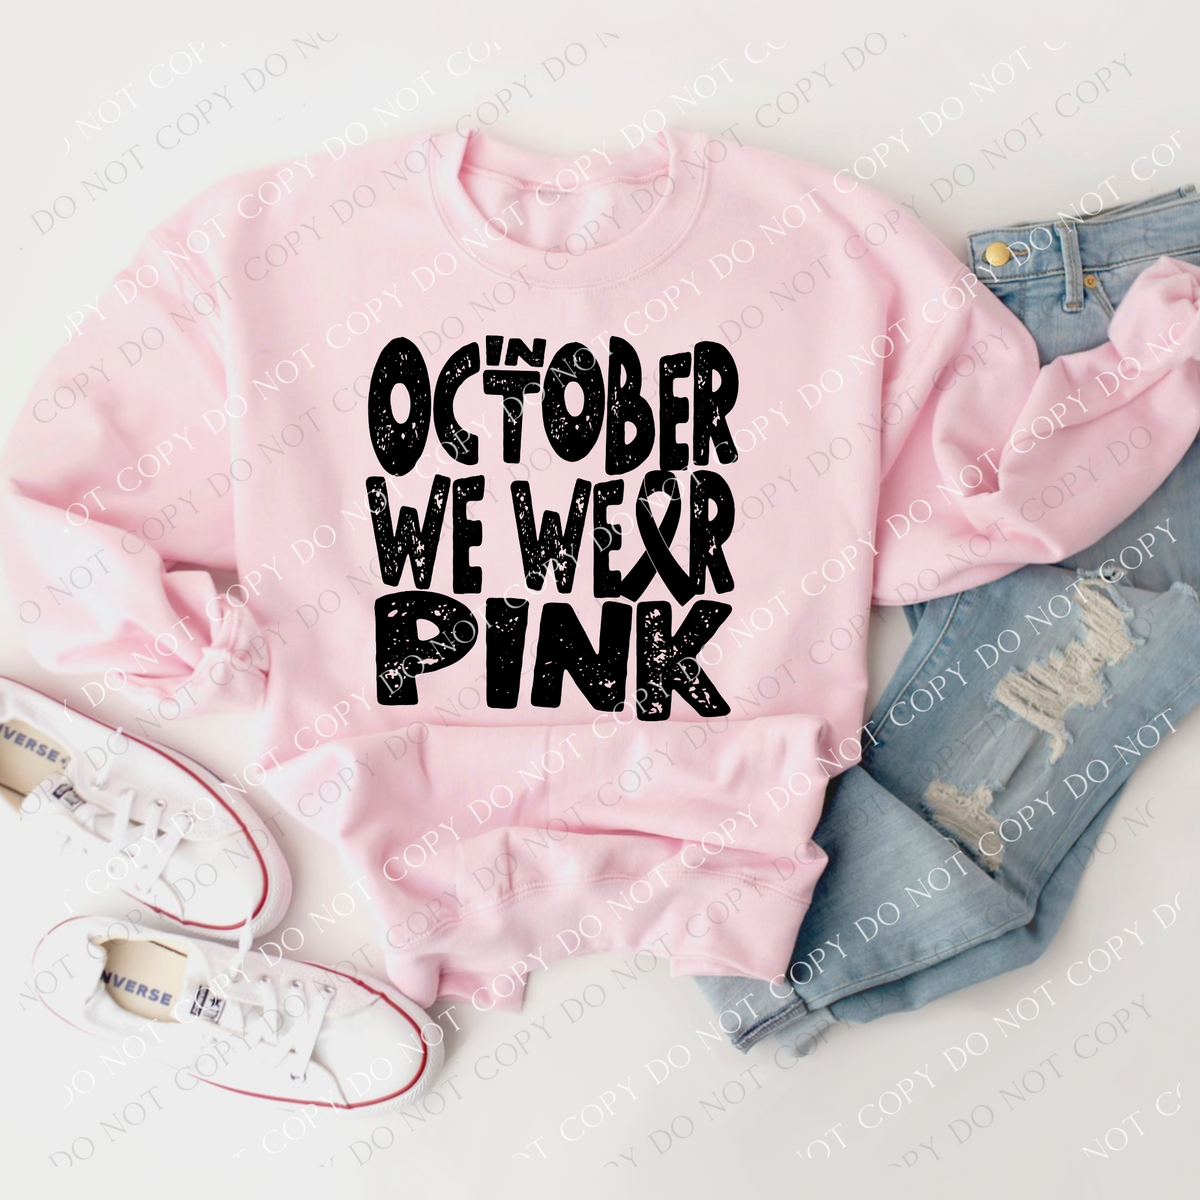 In October we Wear Pink Distressed, Cancer Ribbon Black Single Color Digital Design,  PNG